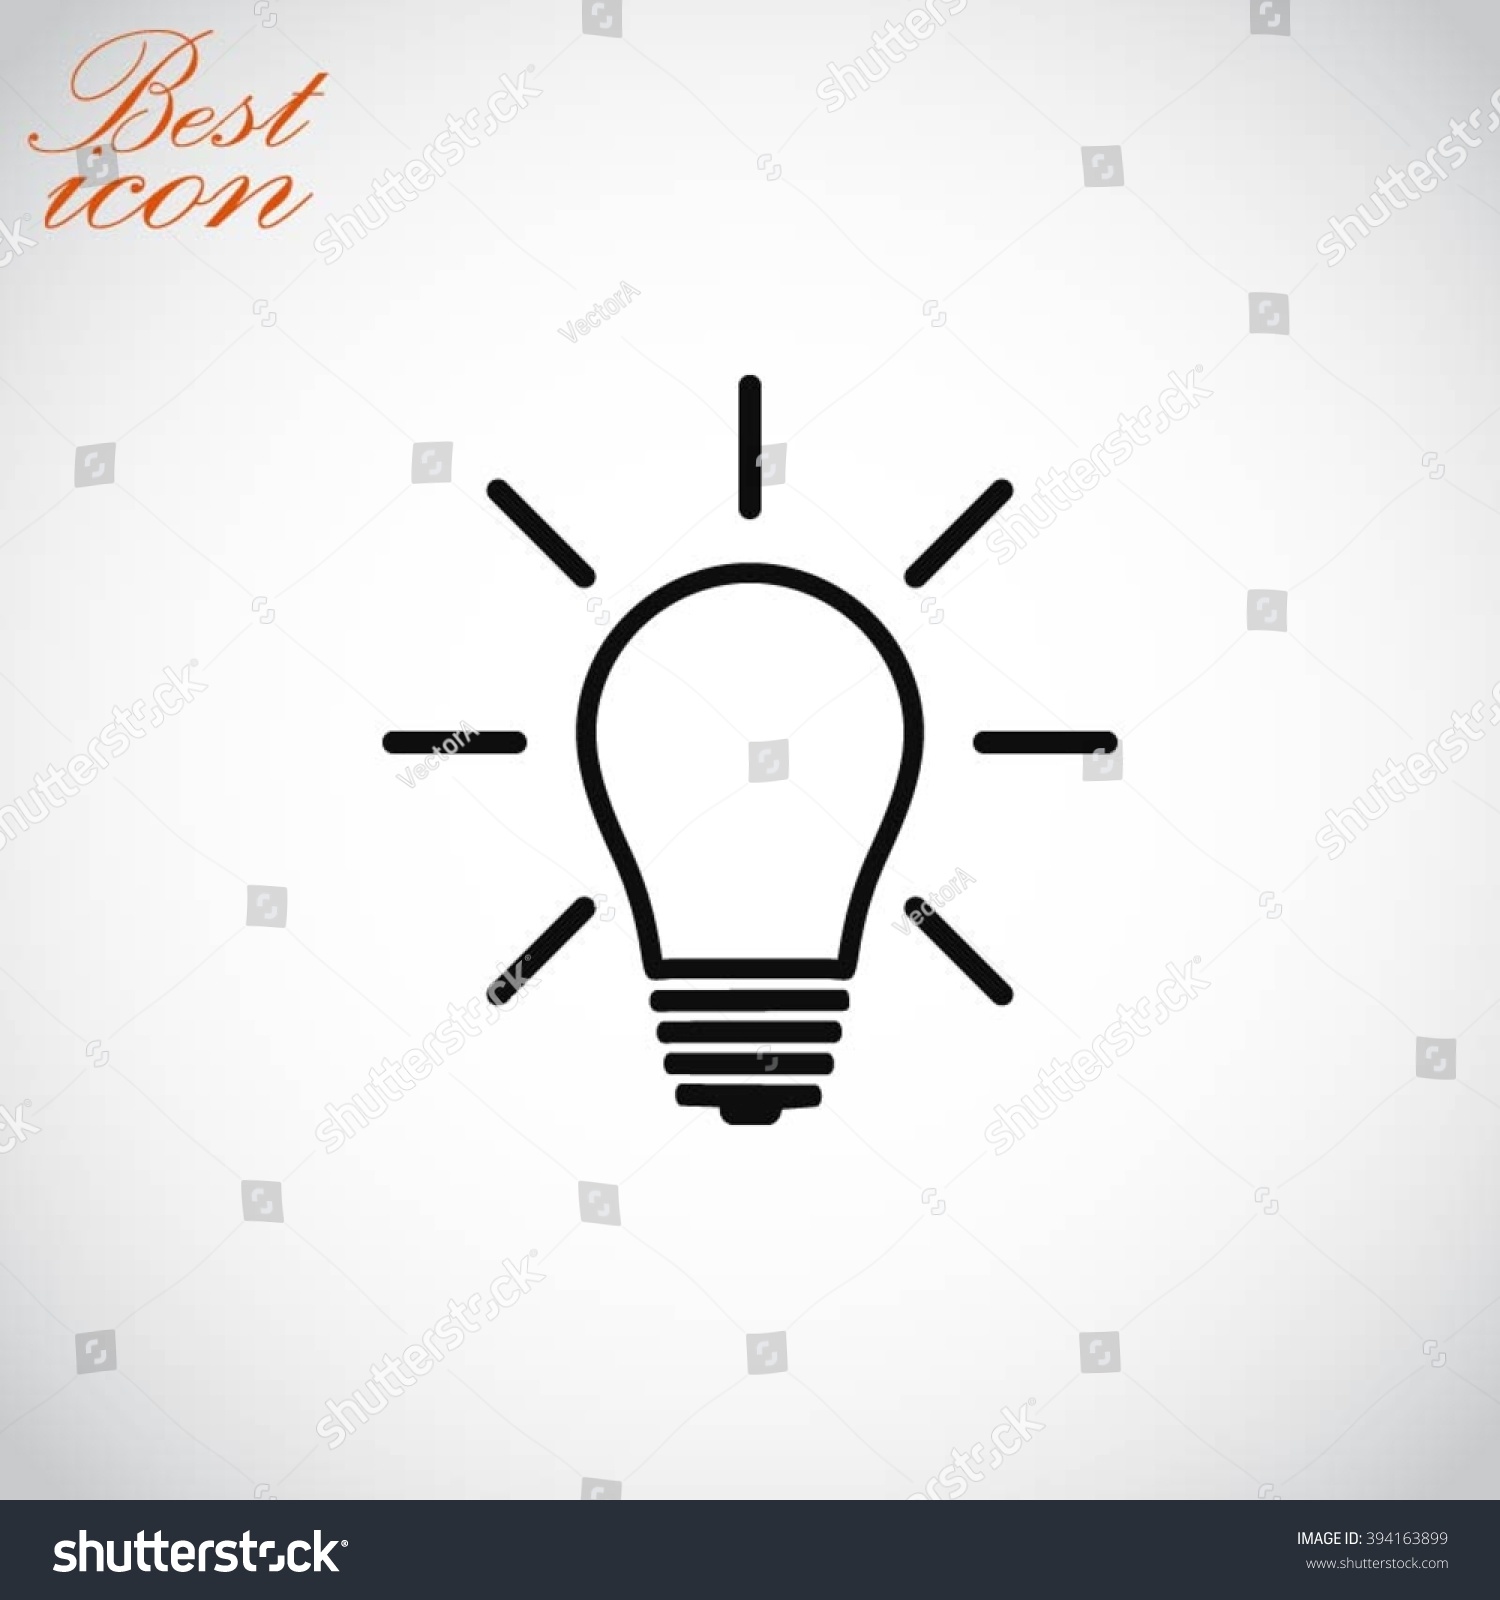 Light Bulb Icon Stock Vector 394163899 : Shutterstock